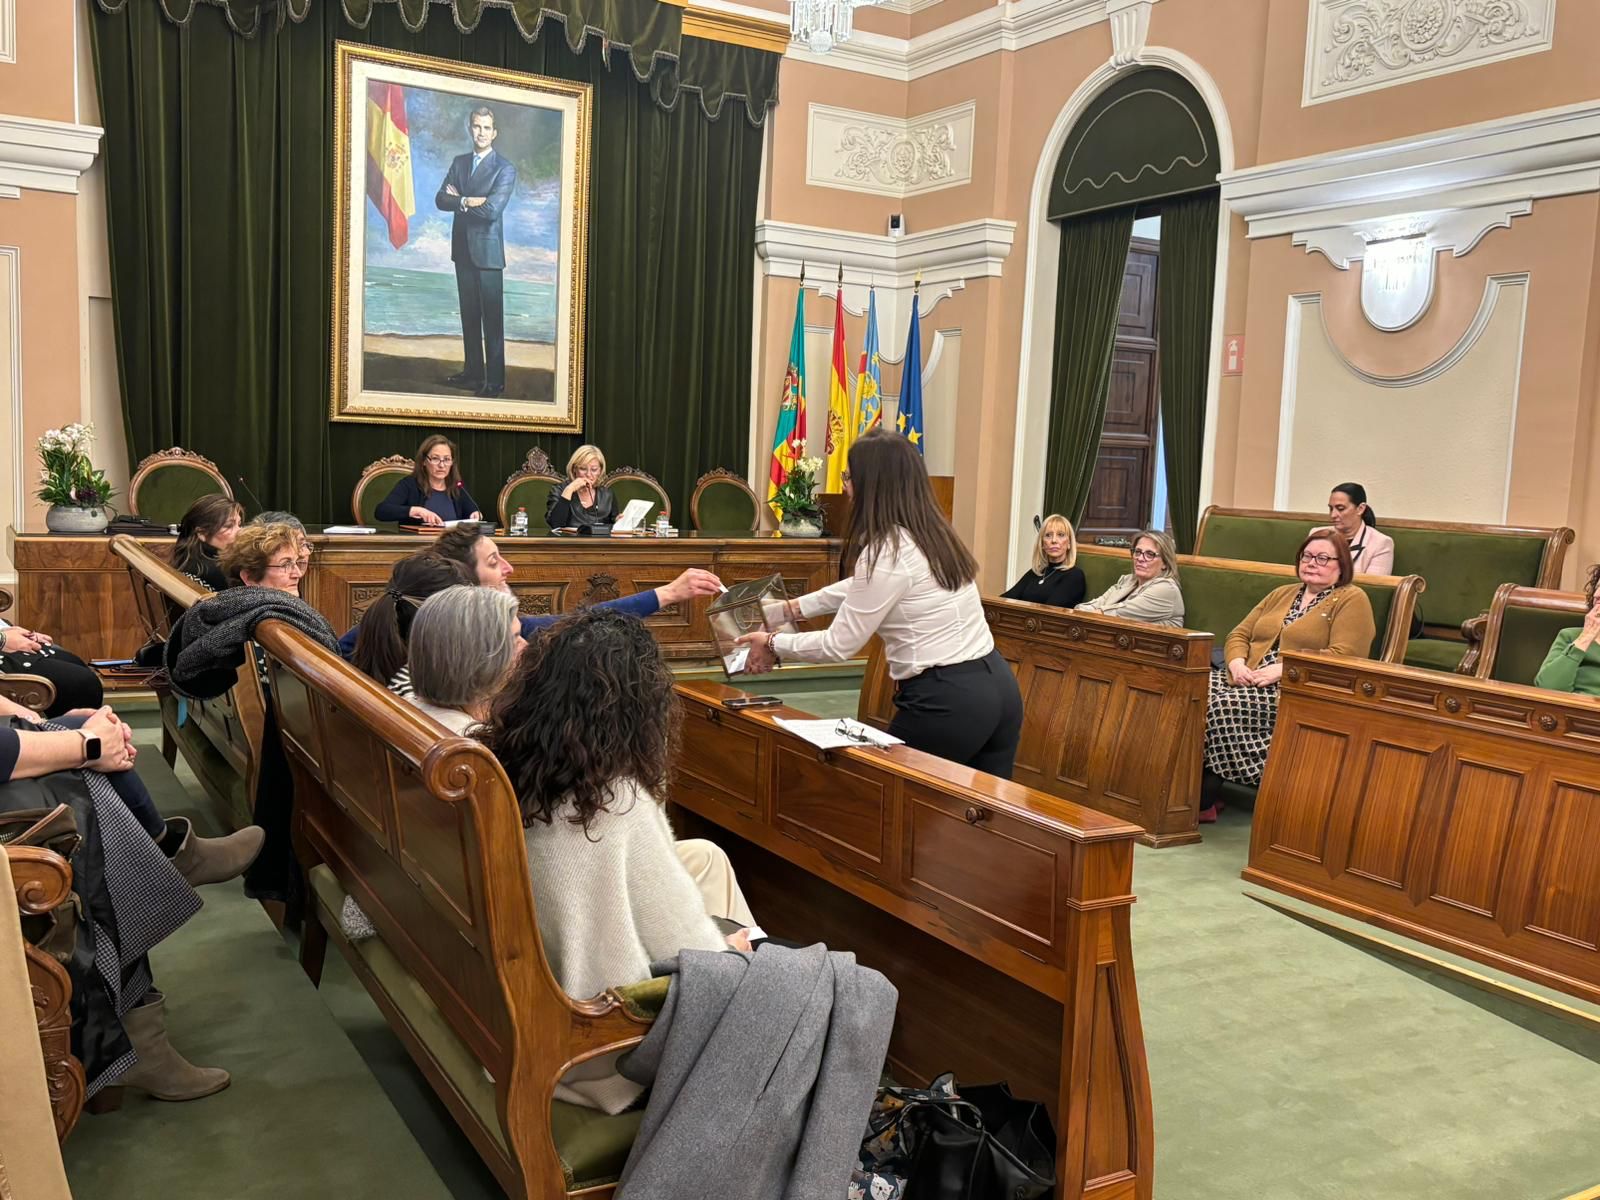 El Consell Municipal d'Igualtat ha votat que el premi Olímpia enguany siga per a Marisa Ribes